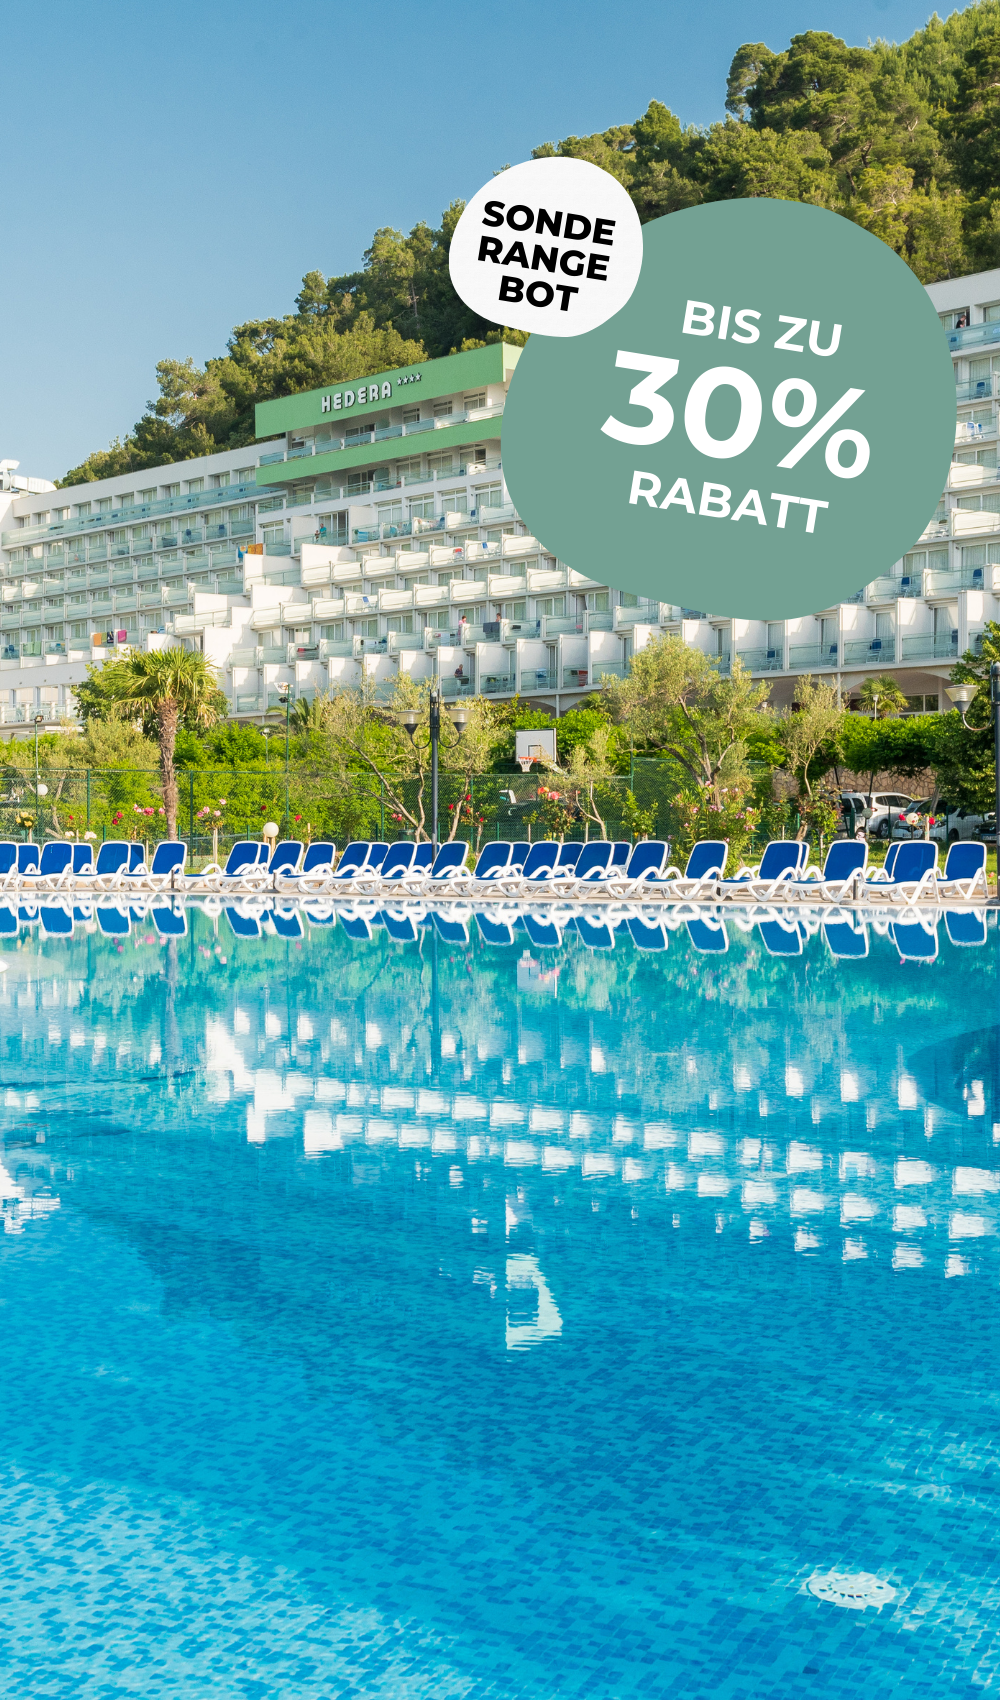 Das Hotel Hedera ist der richtige Ort für einen Familienurlaub in Kroatien. Dieses Hotel bietet Unterhaltung und Aktivitäten für die ganze Familie.